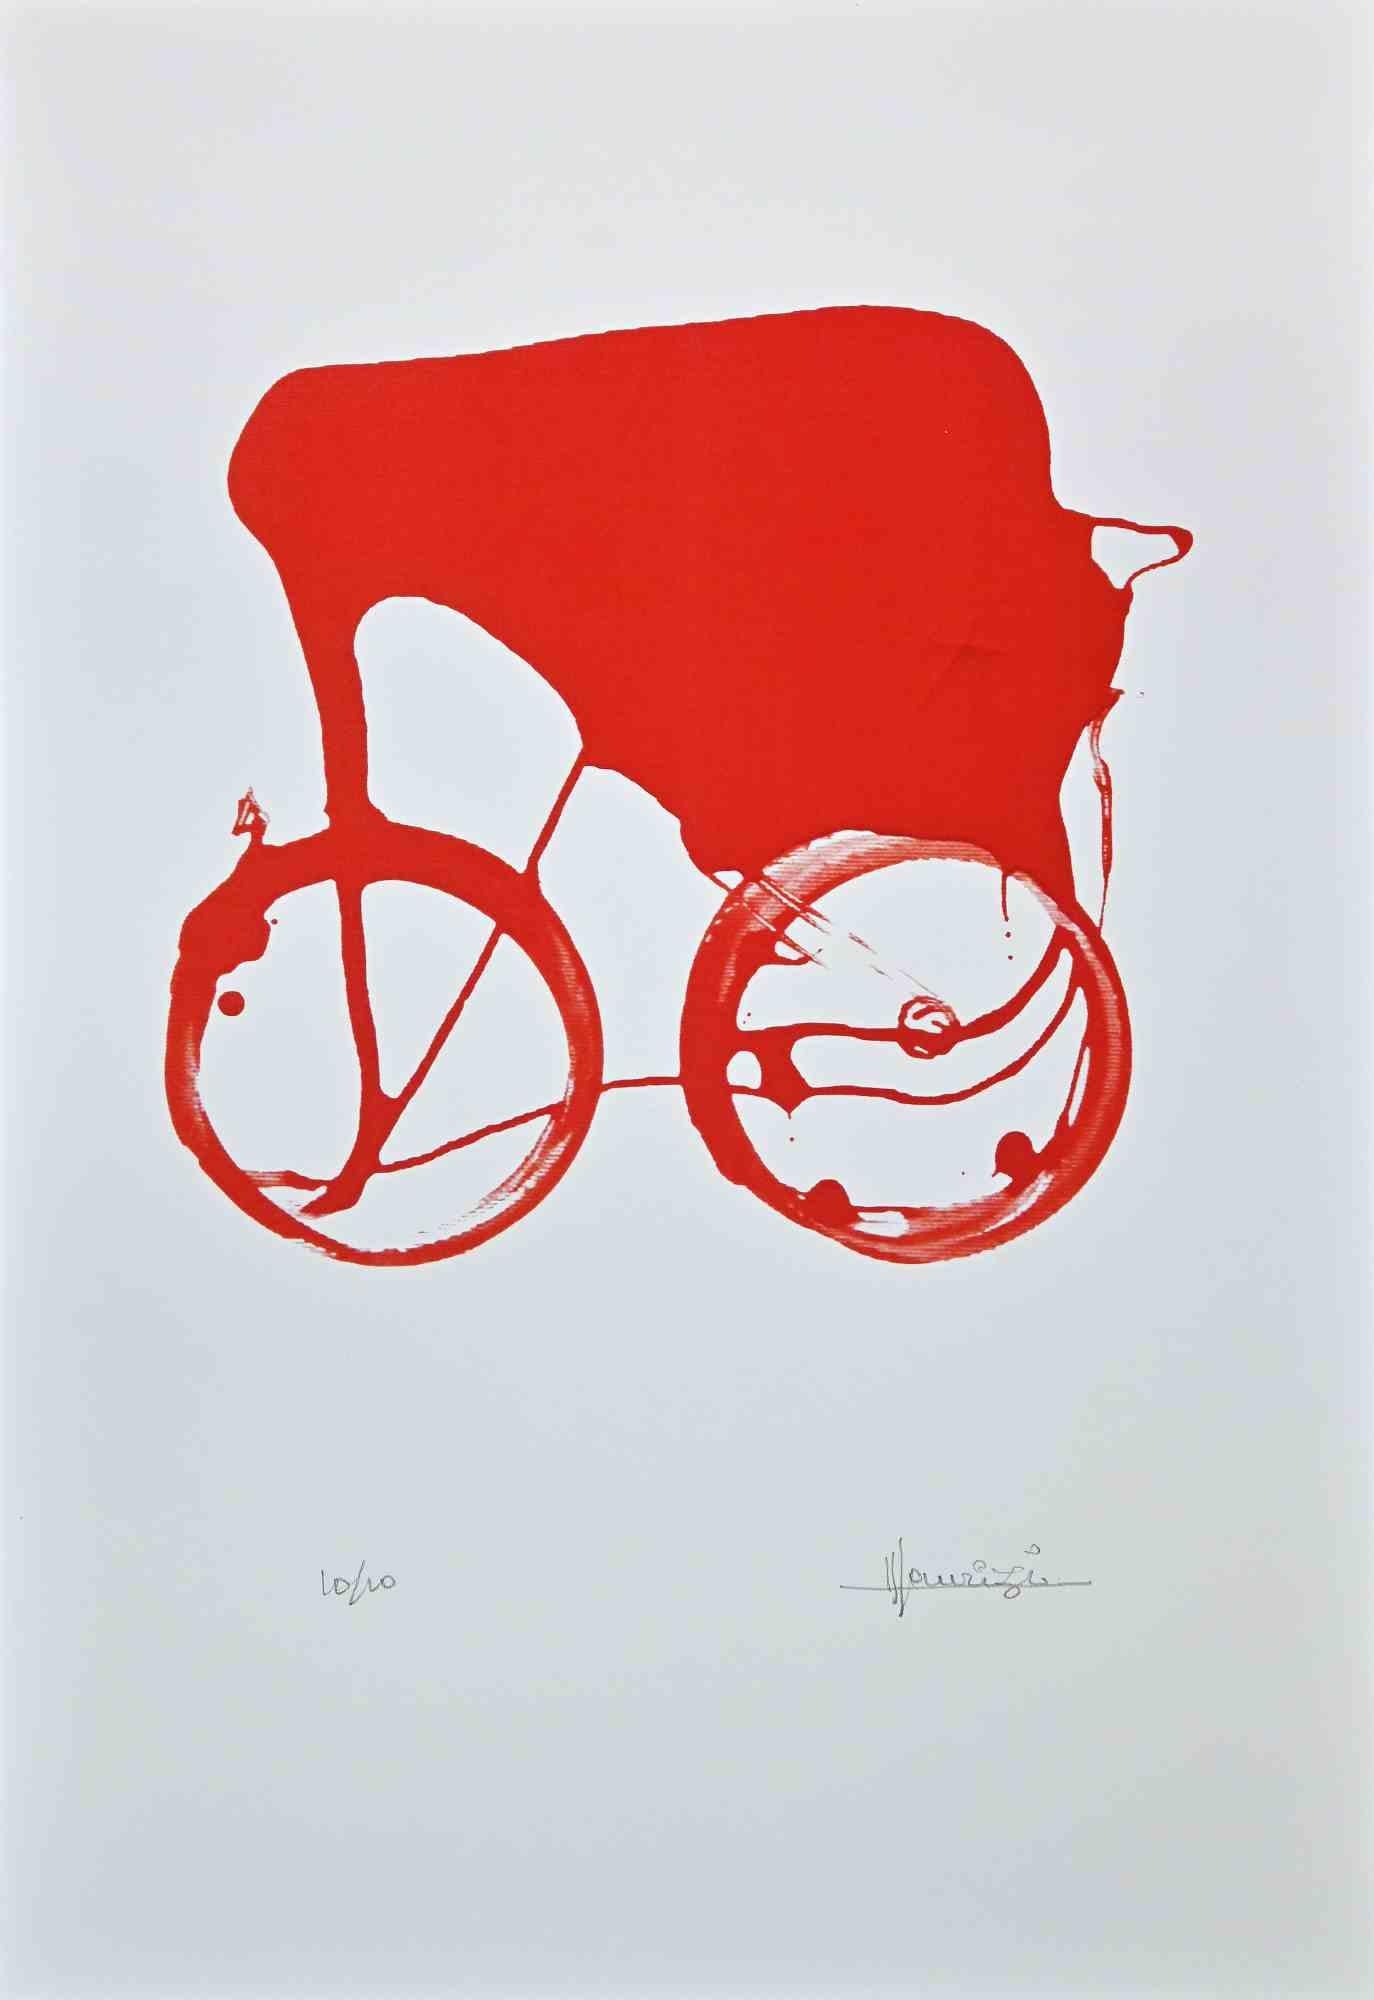 Red Chariot ist ein Original-Siebdruck auf weißem Papier, der vom italienischen Künstler Tonino Maurizi realisiert wurde.

Rechts unten handsigniert.

Links unten nummeriert, Auflage 10/100 Exemplare.

Sehr guter Zustand.